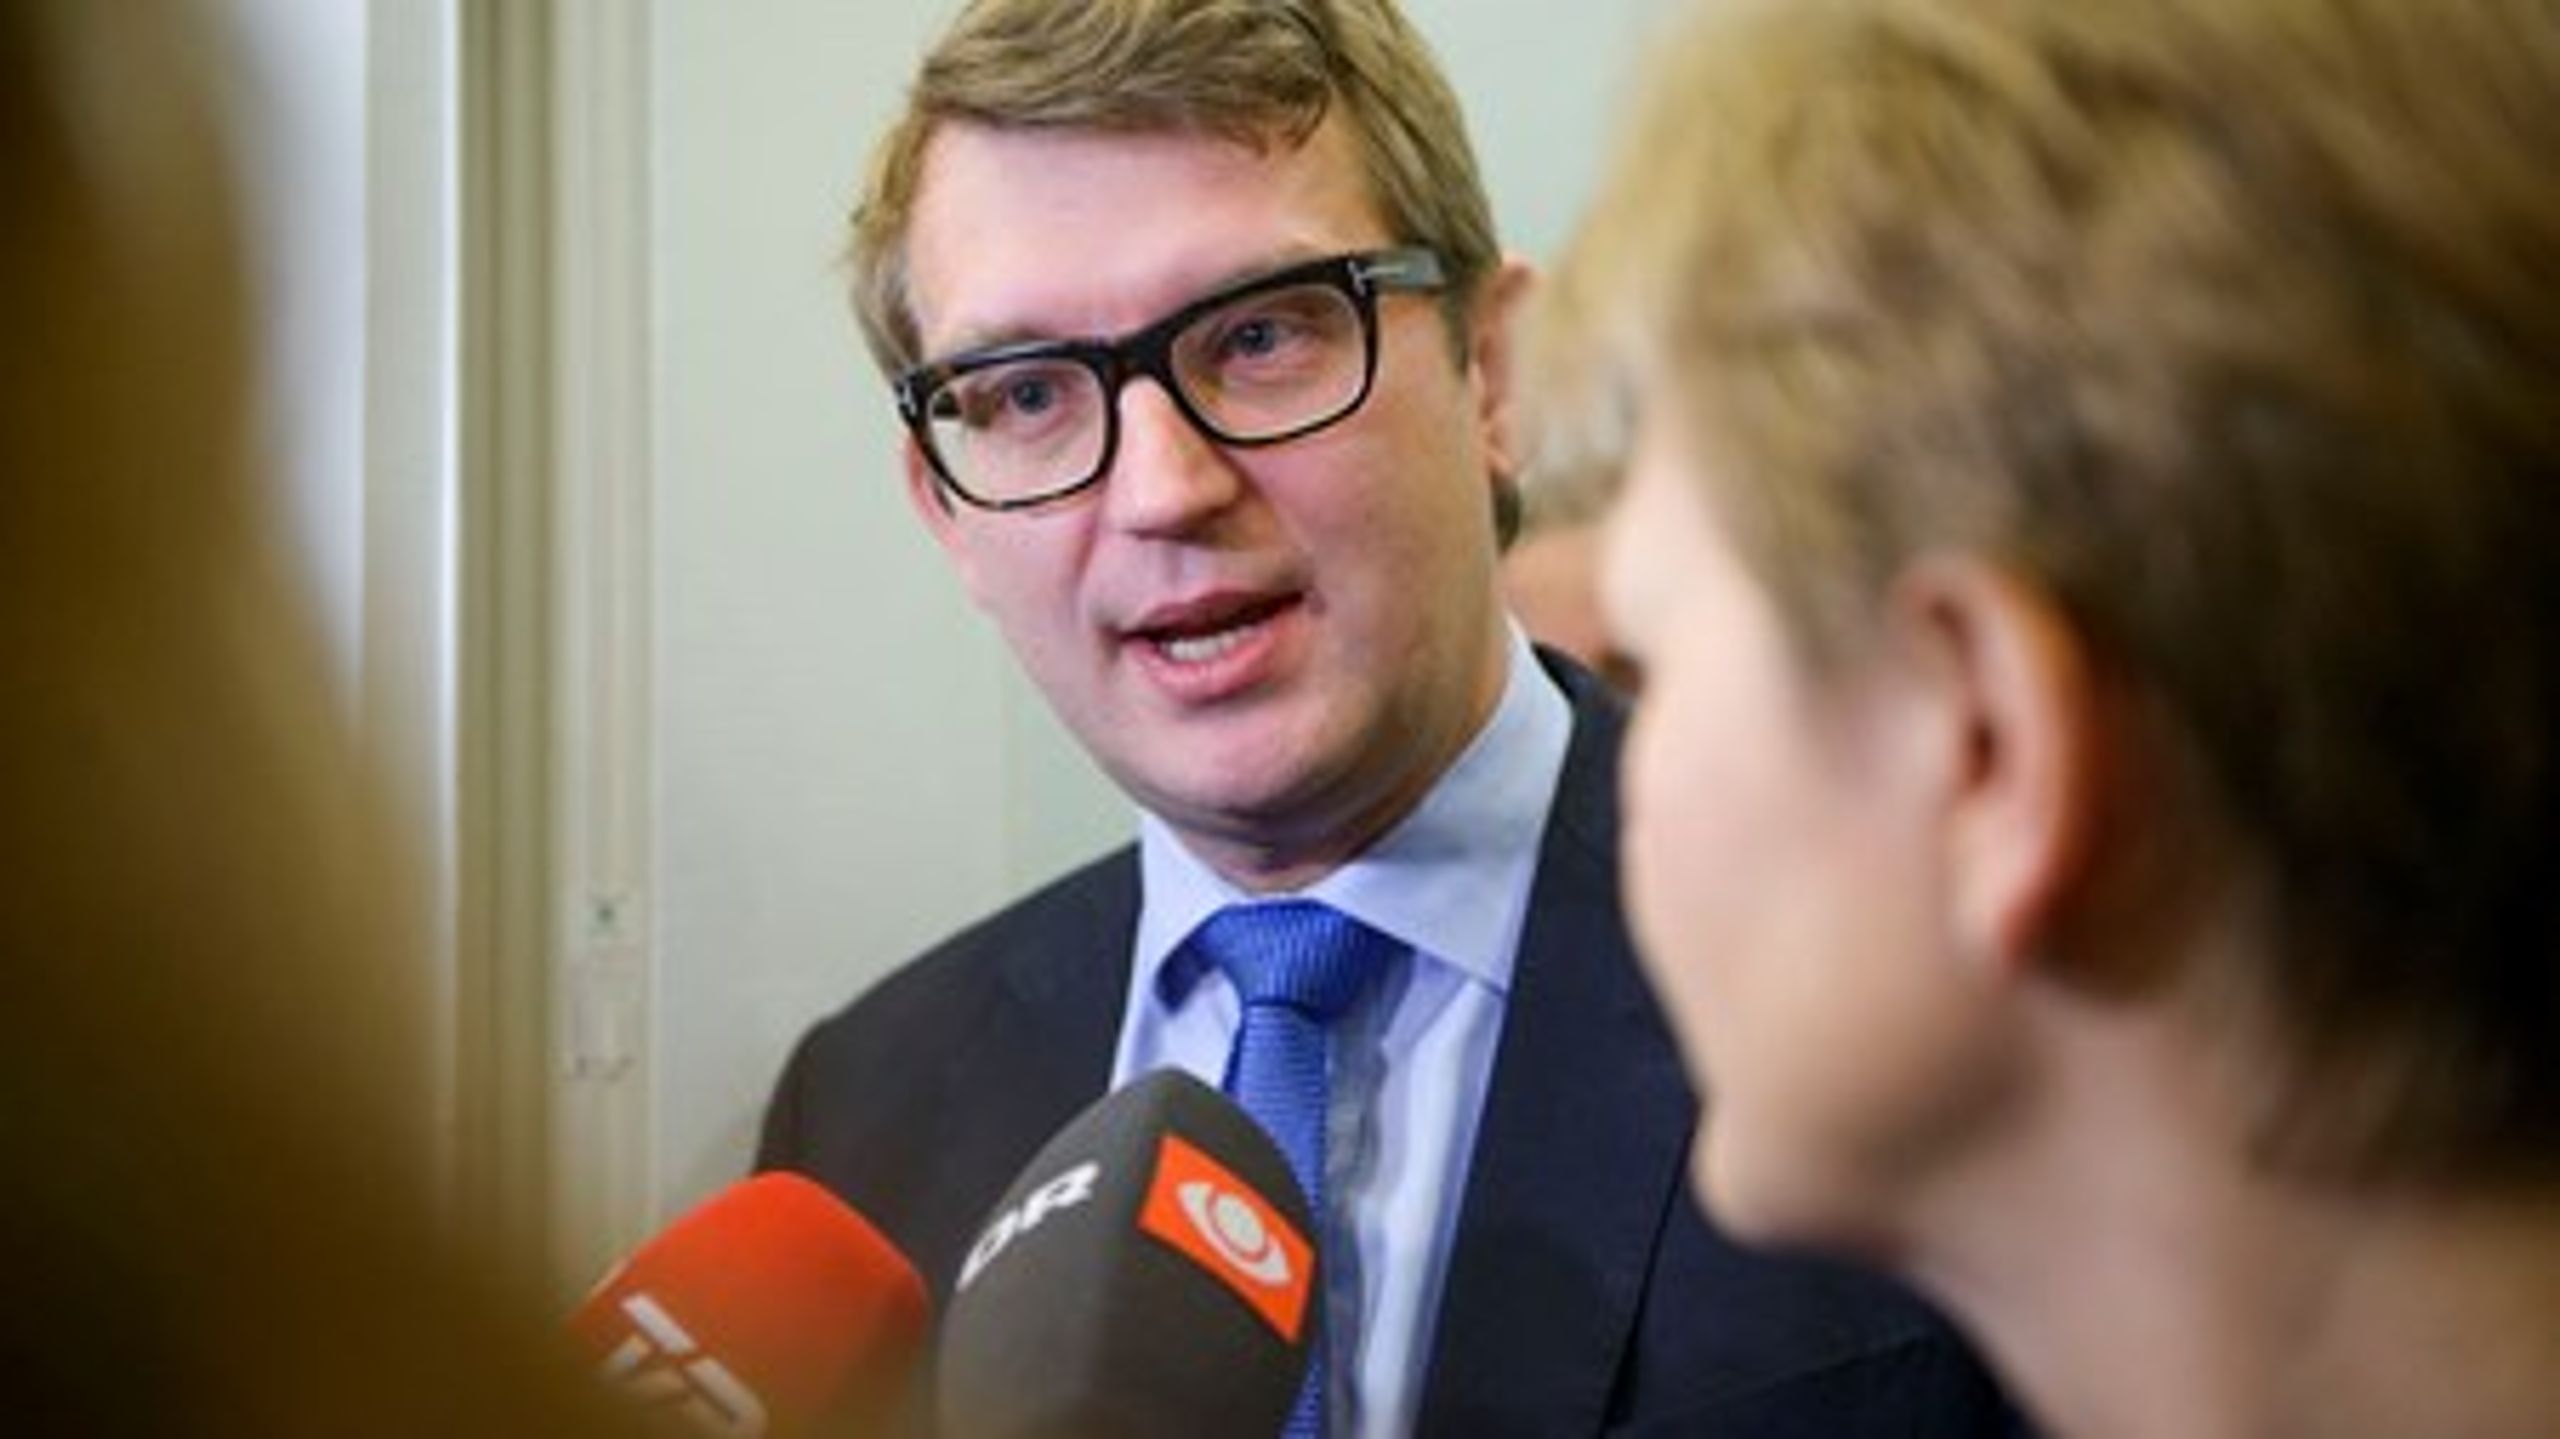 Nogen Europaminister blev der ikke plads til i den smalle Venstre-regering. Men erhvervs- og vækstminister Troels Lund Poulsen står i spidsen for regeringens nye implementeringsudvalg, som skal forhindre, at EU-lovgivning spænder unødigt ben for danske erhvervsinteresser.